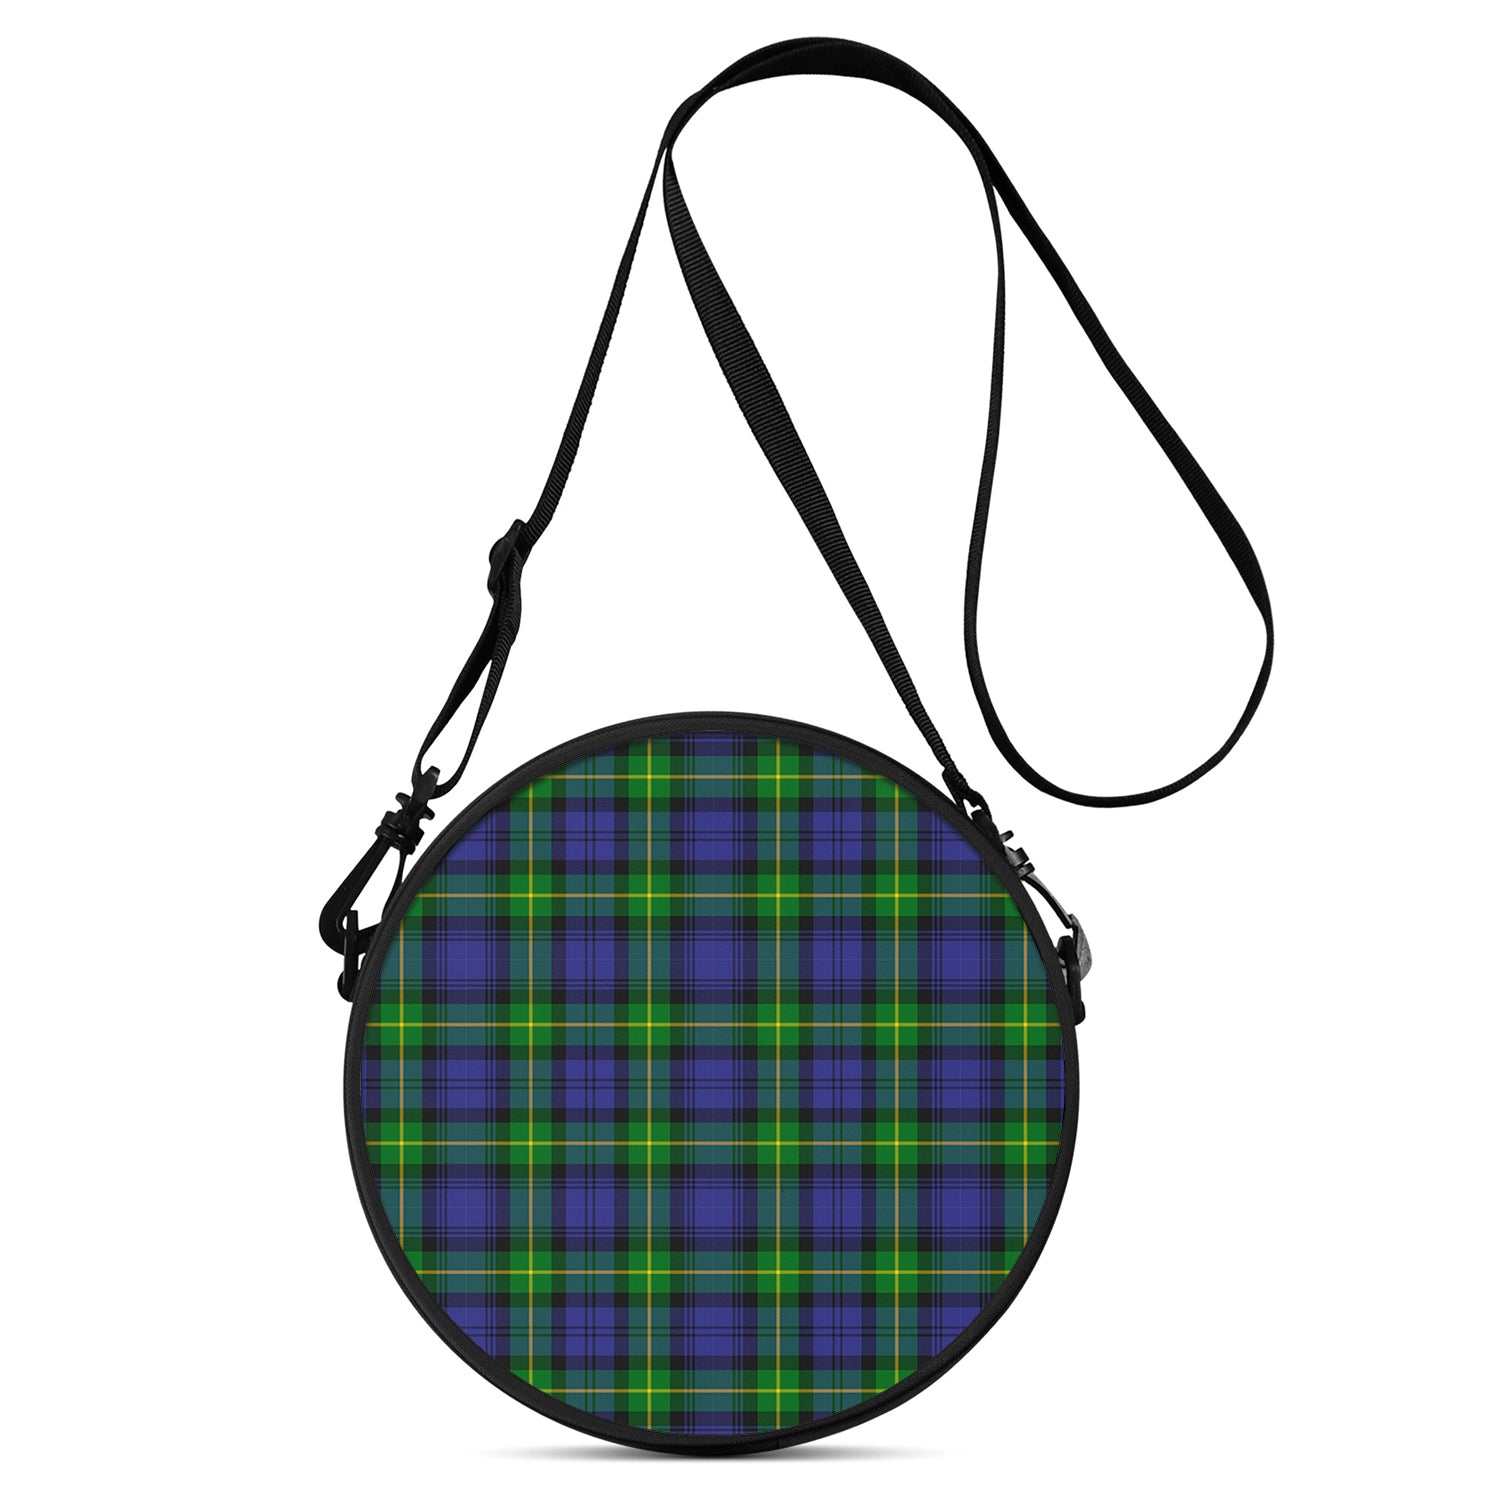 meldrum-tartan-round-satchel-bags